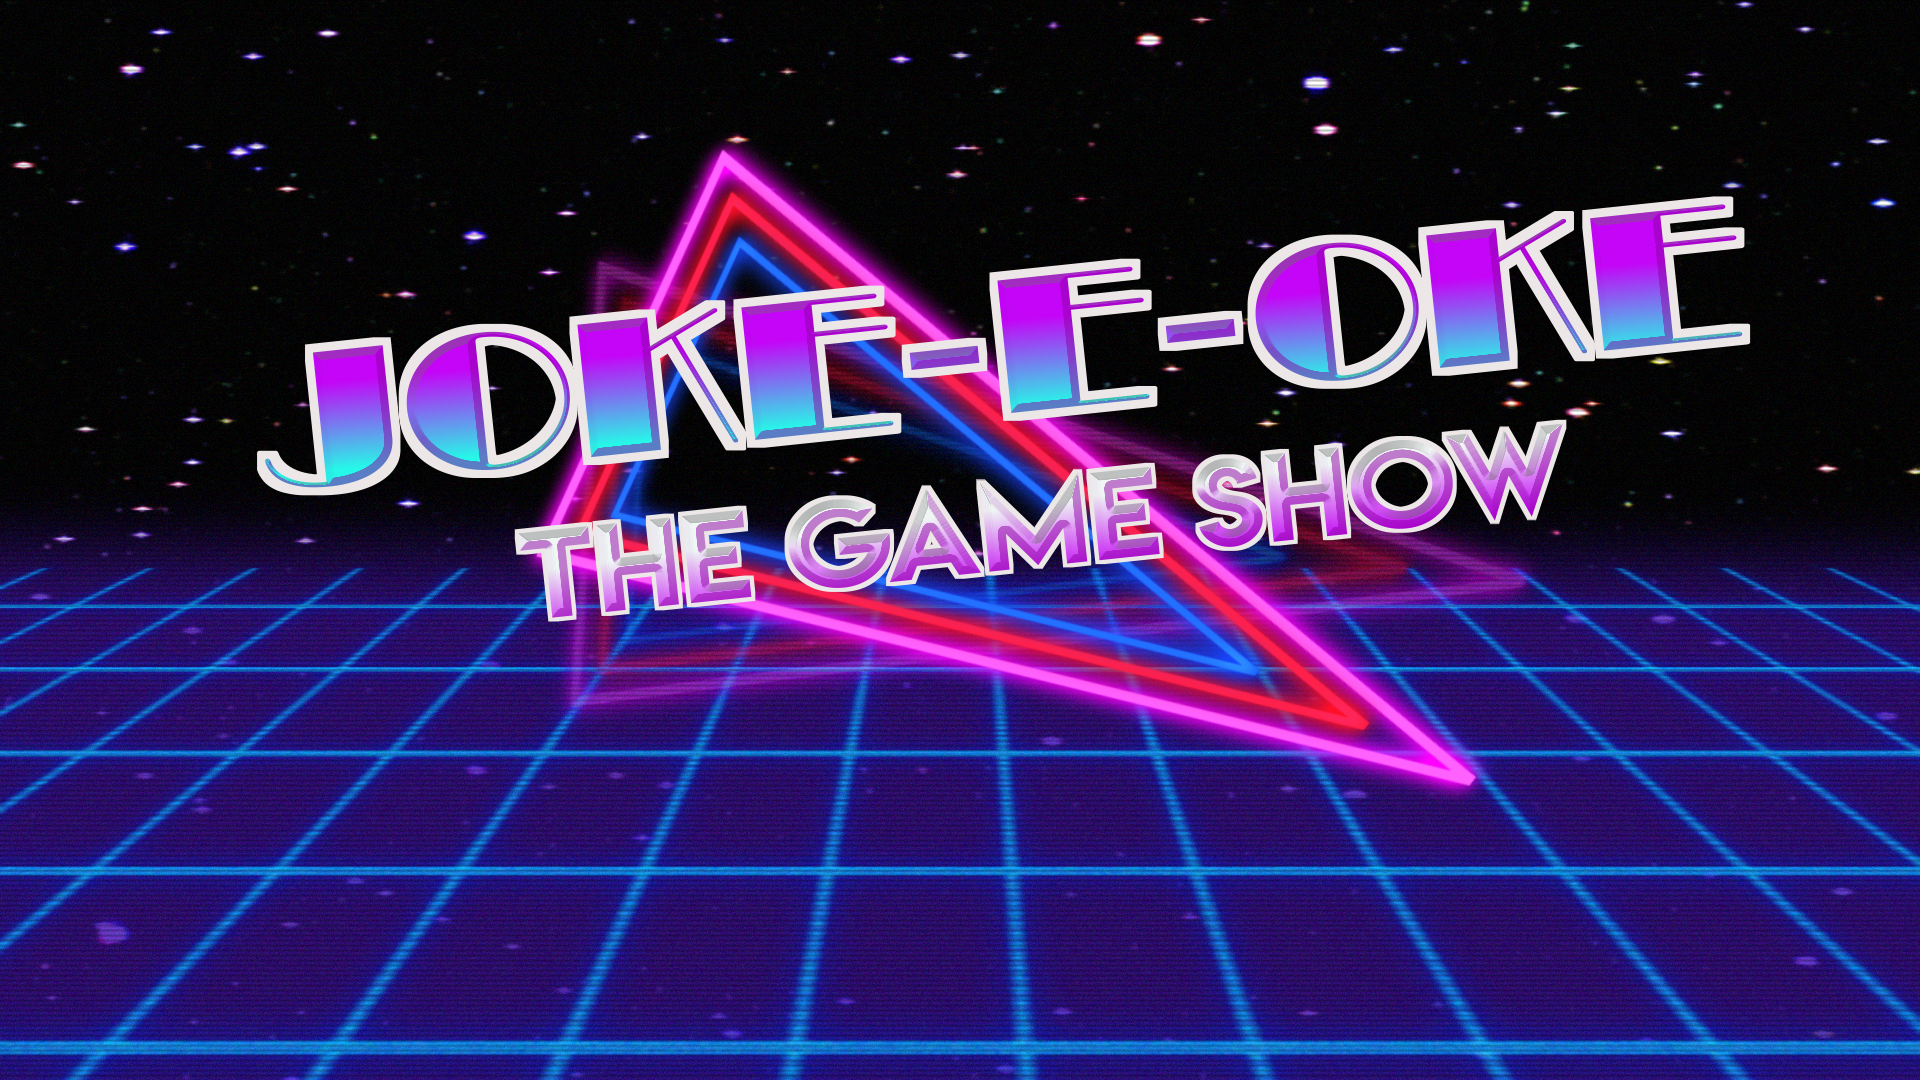 Joke-e-oke: The Standup Karaoke Game Show - Brokelyn